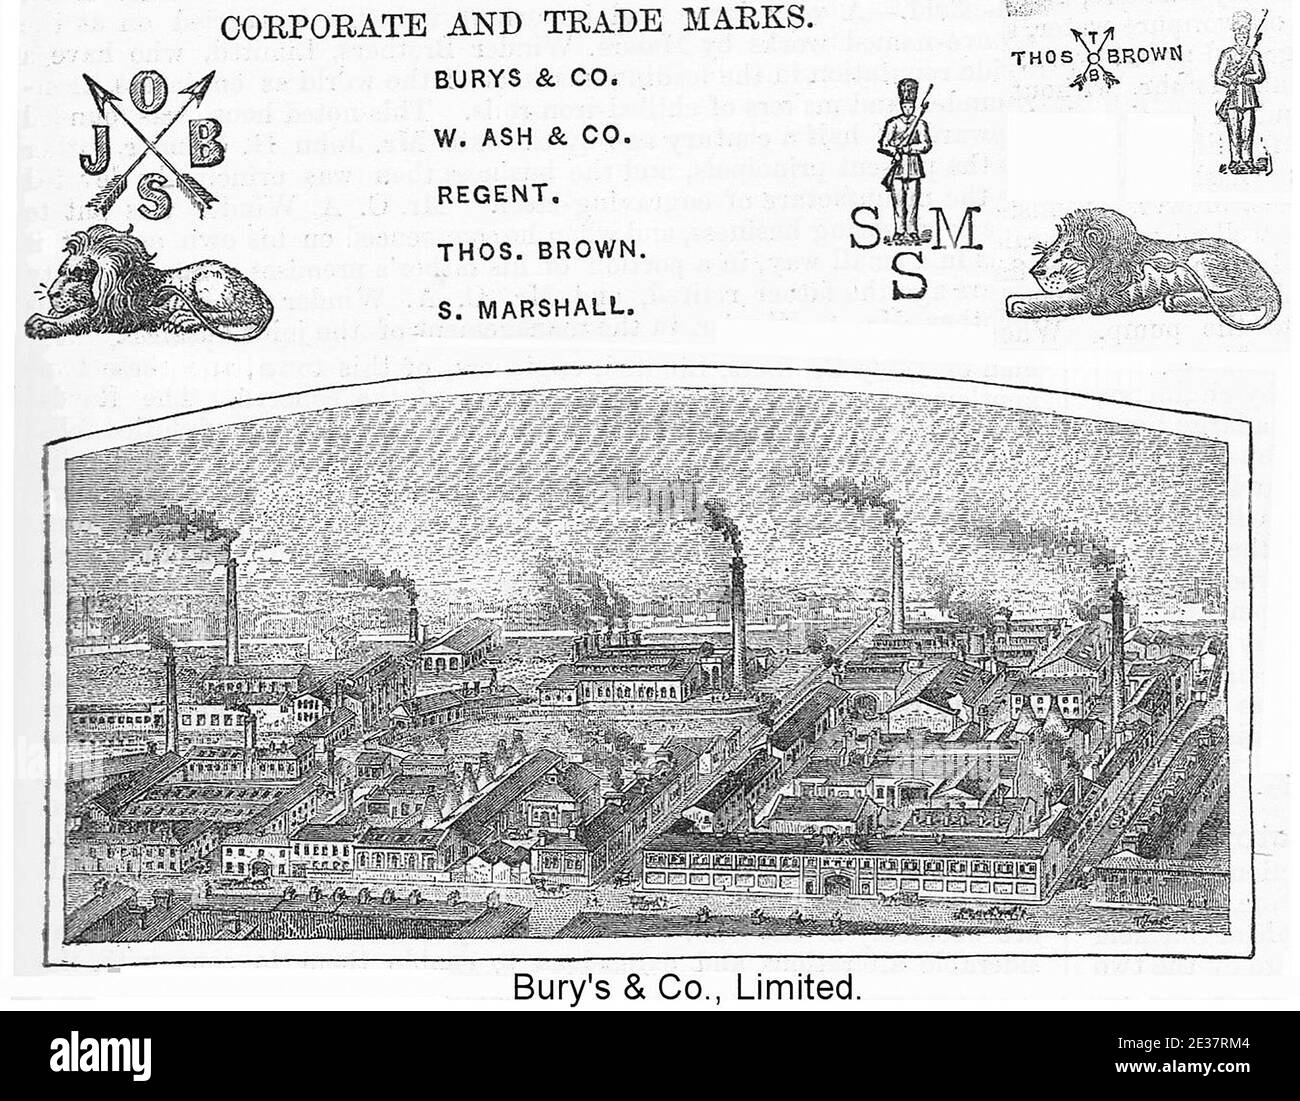 Bury's and Co Ltd, Regent Works, Sheffield, Yorkshire, Großbritannien. Stahl-, Feile- und Werkzeughersteller. Eine Radierung, Gravur oder Lithographie aus der viktorianischen Zeit. Stockfoto